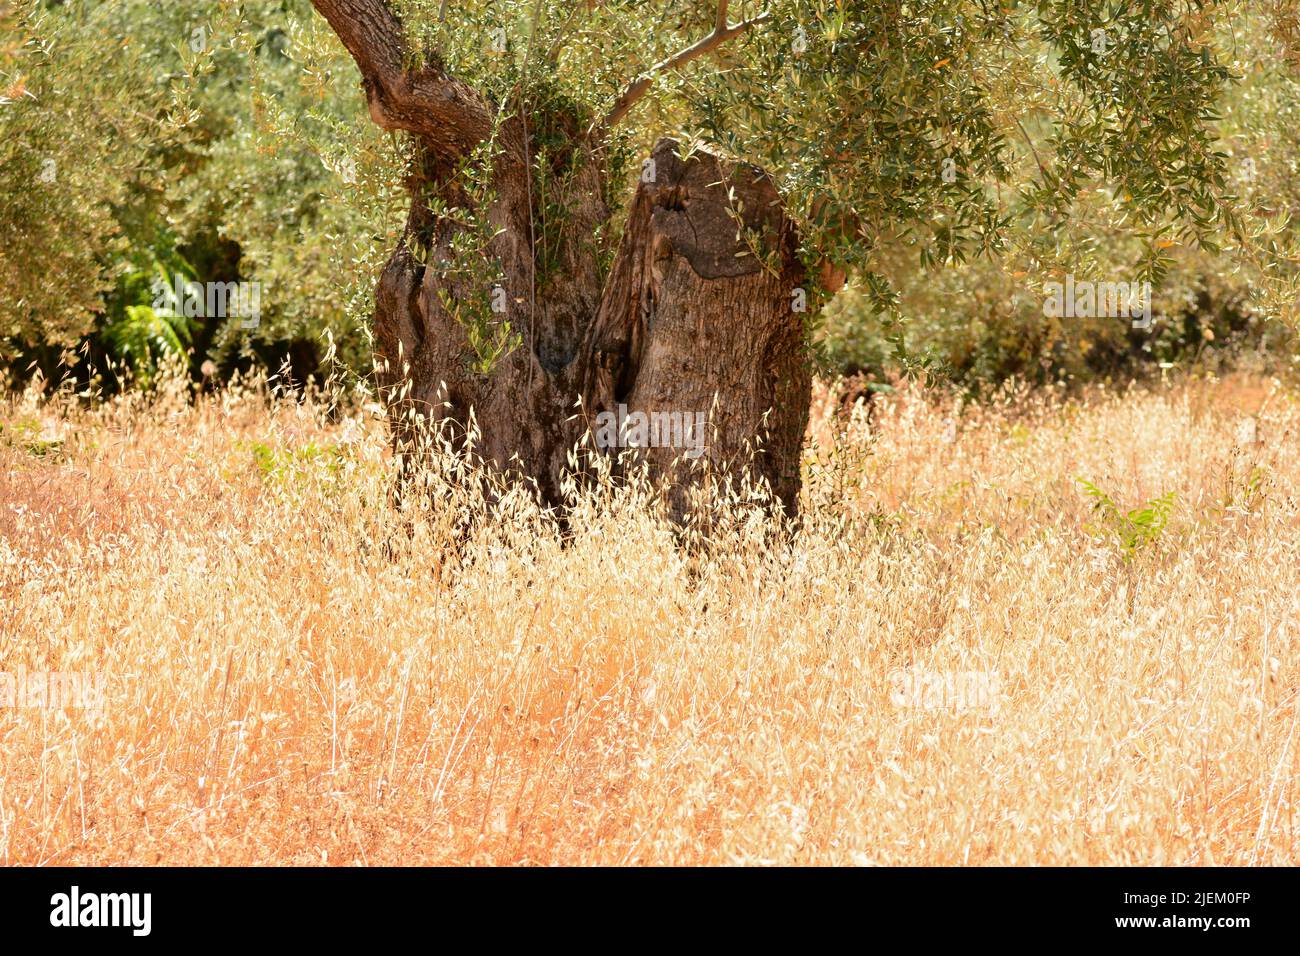 Viejo olivo entre la hierba seca en verano Stock Photo